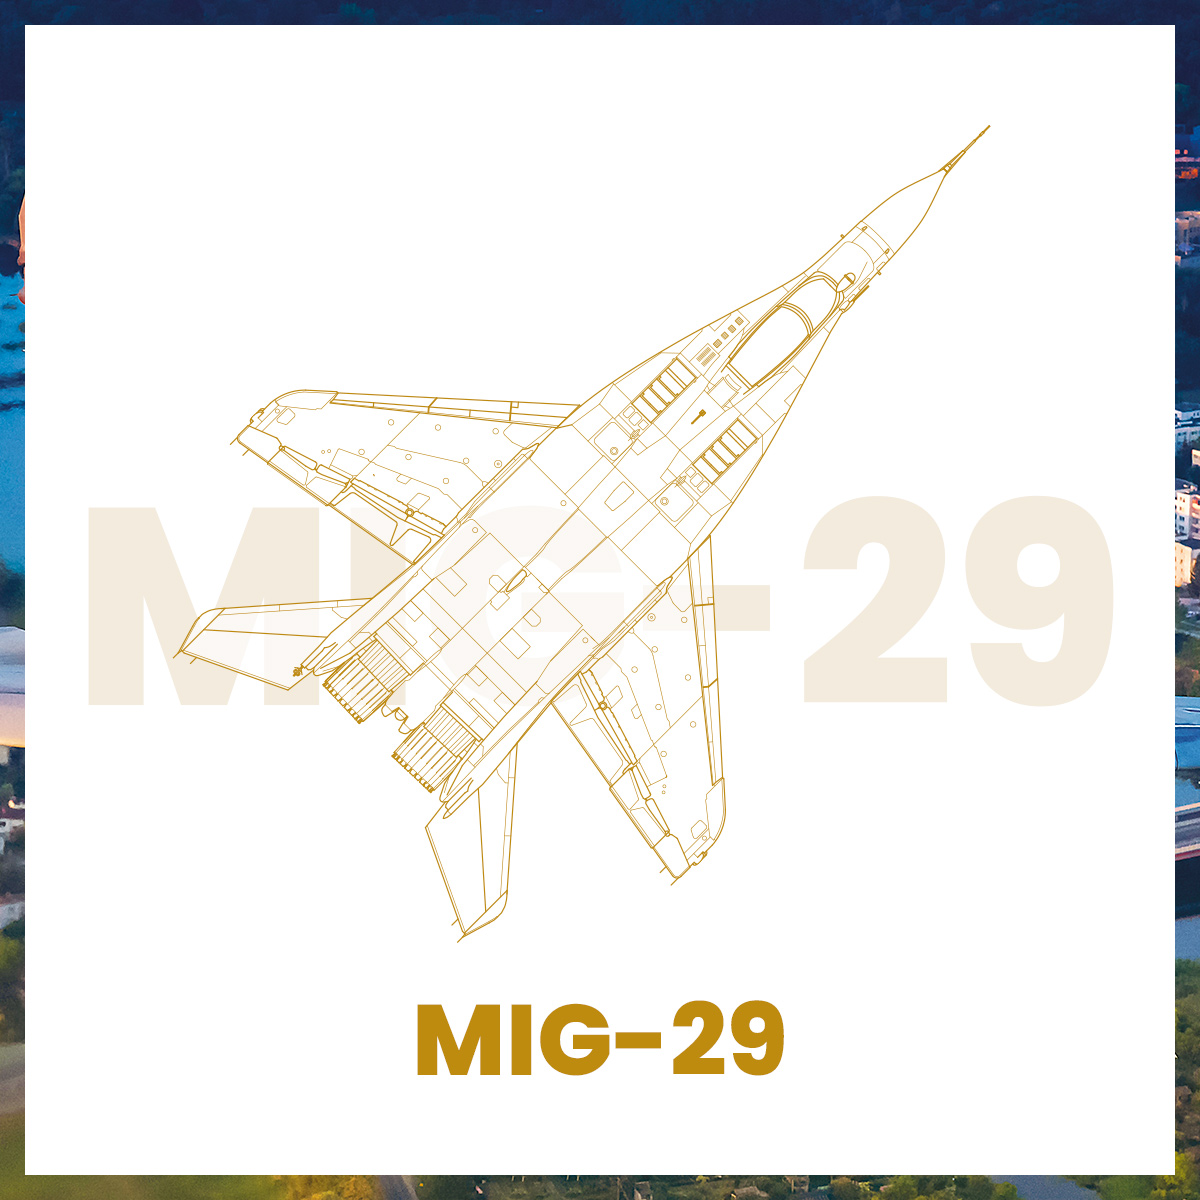 AeroPuzzle flight puzzle - MiG - 29